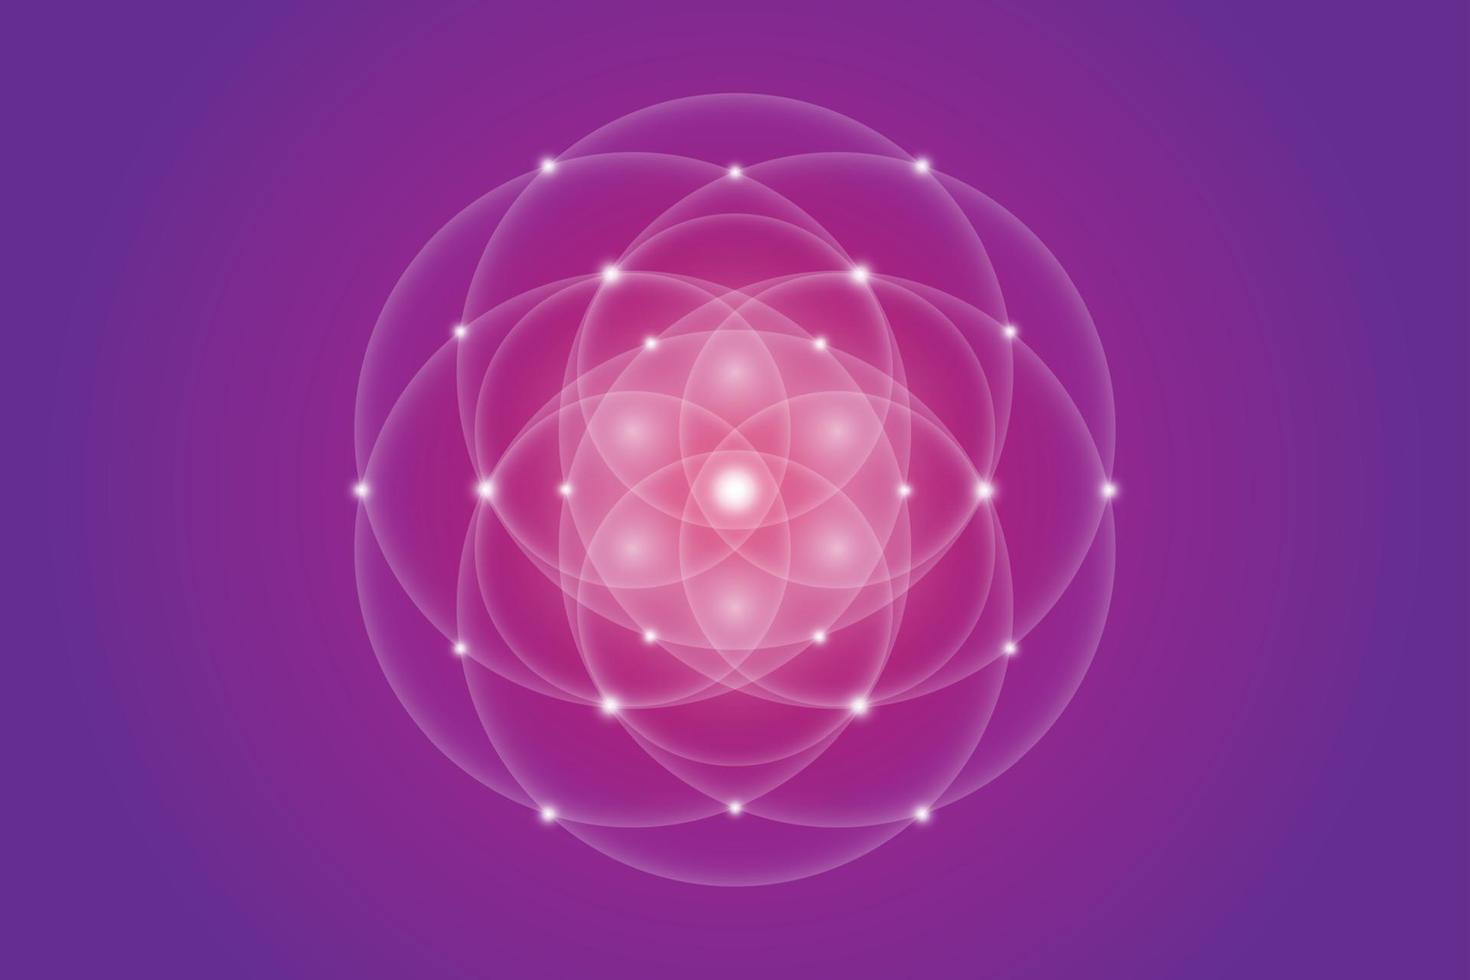 semilla de la vida, geometría sagrada, flor de la vida, símbolo del logotipo de luz de armonía y equilibrio, ornamento geométrico brillante, vector de loto blanco aislado sobre fondo púrpura